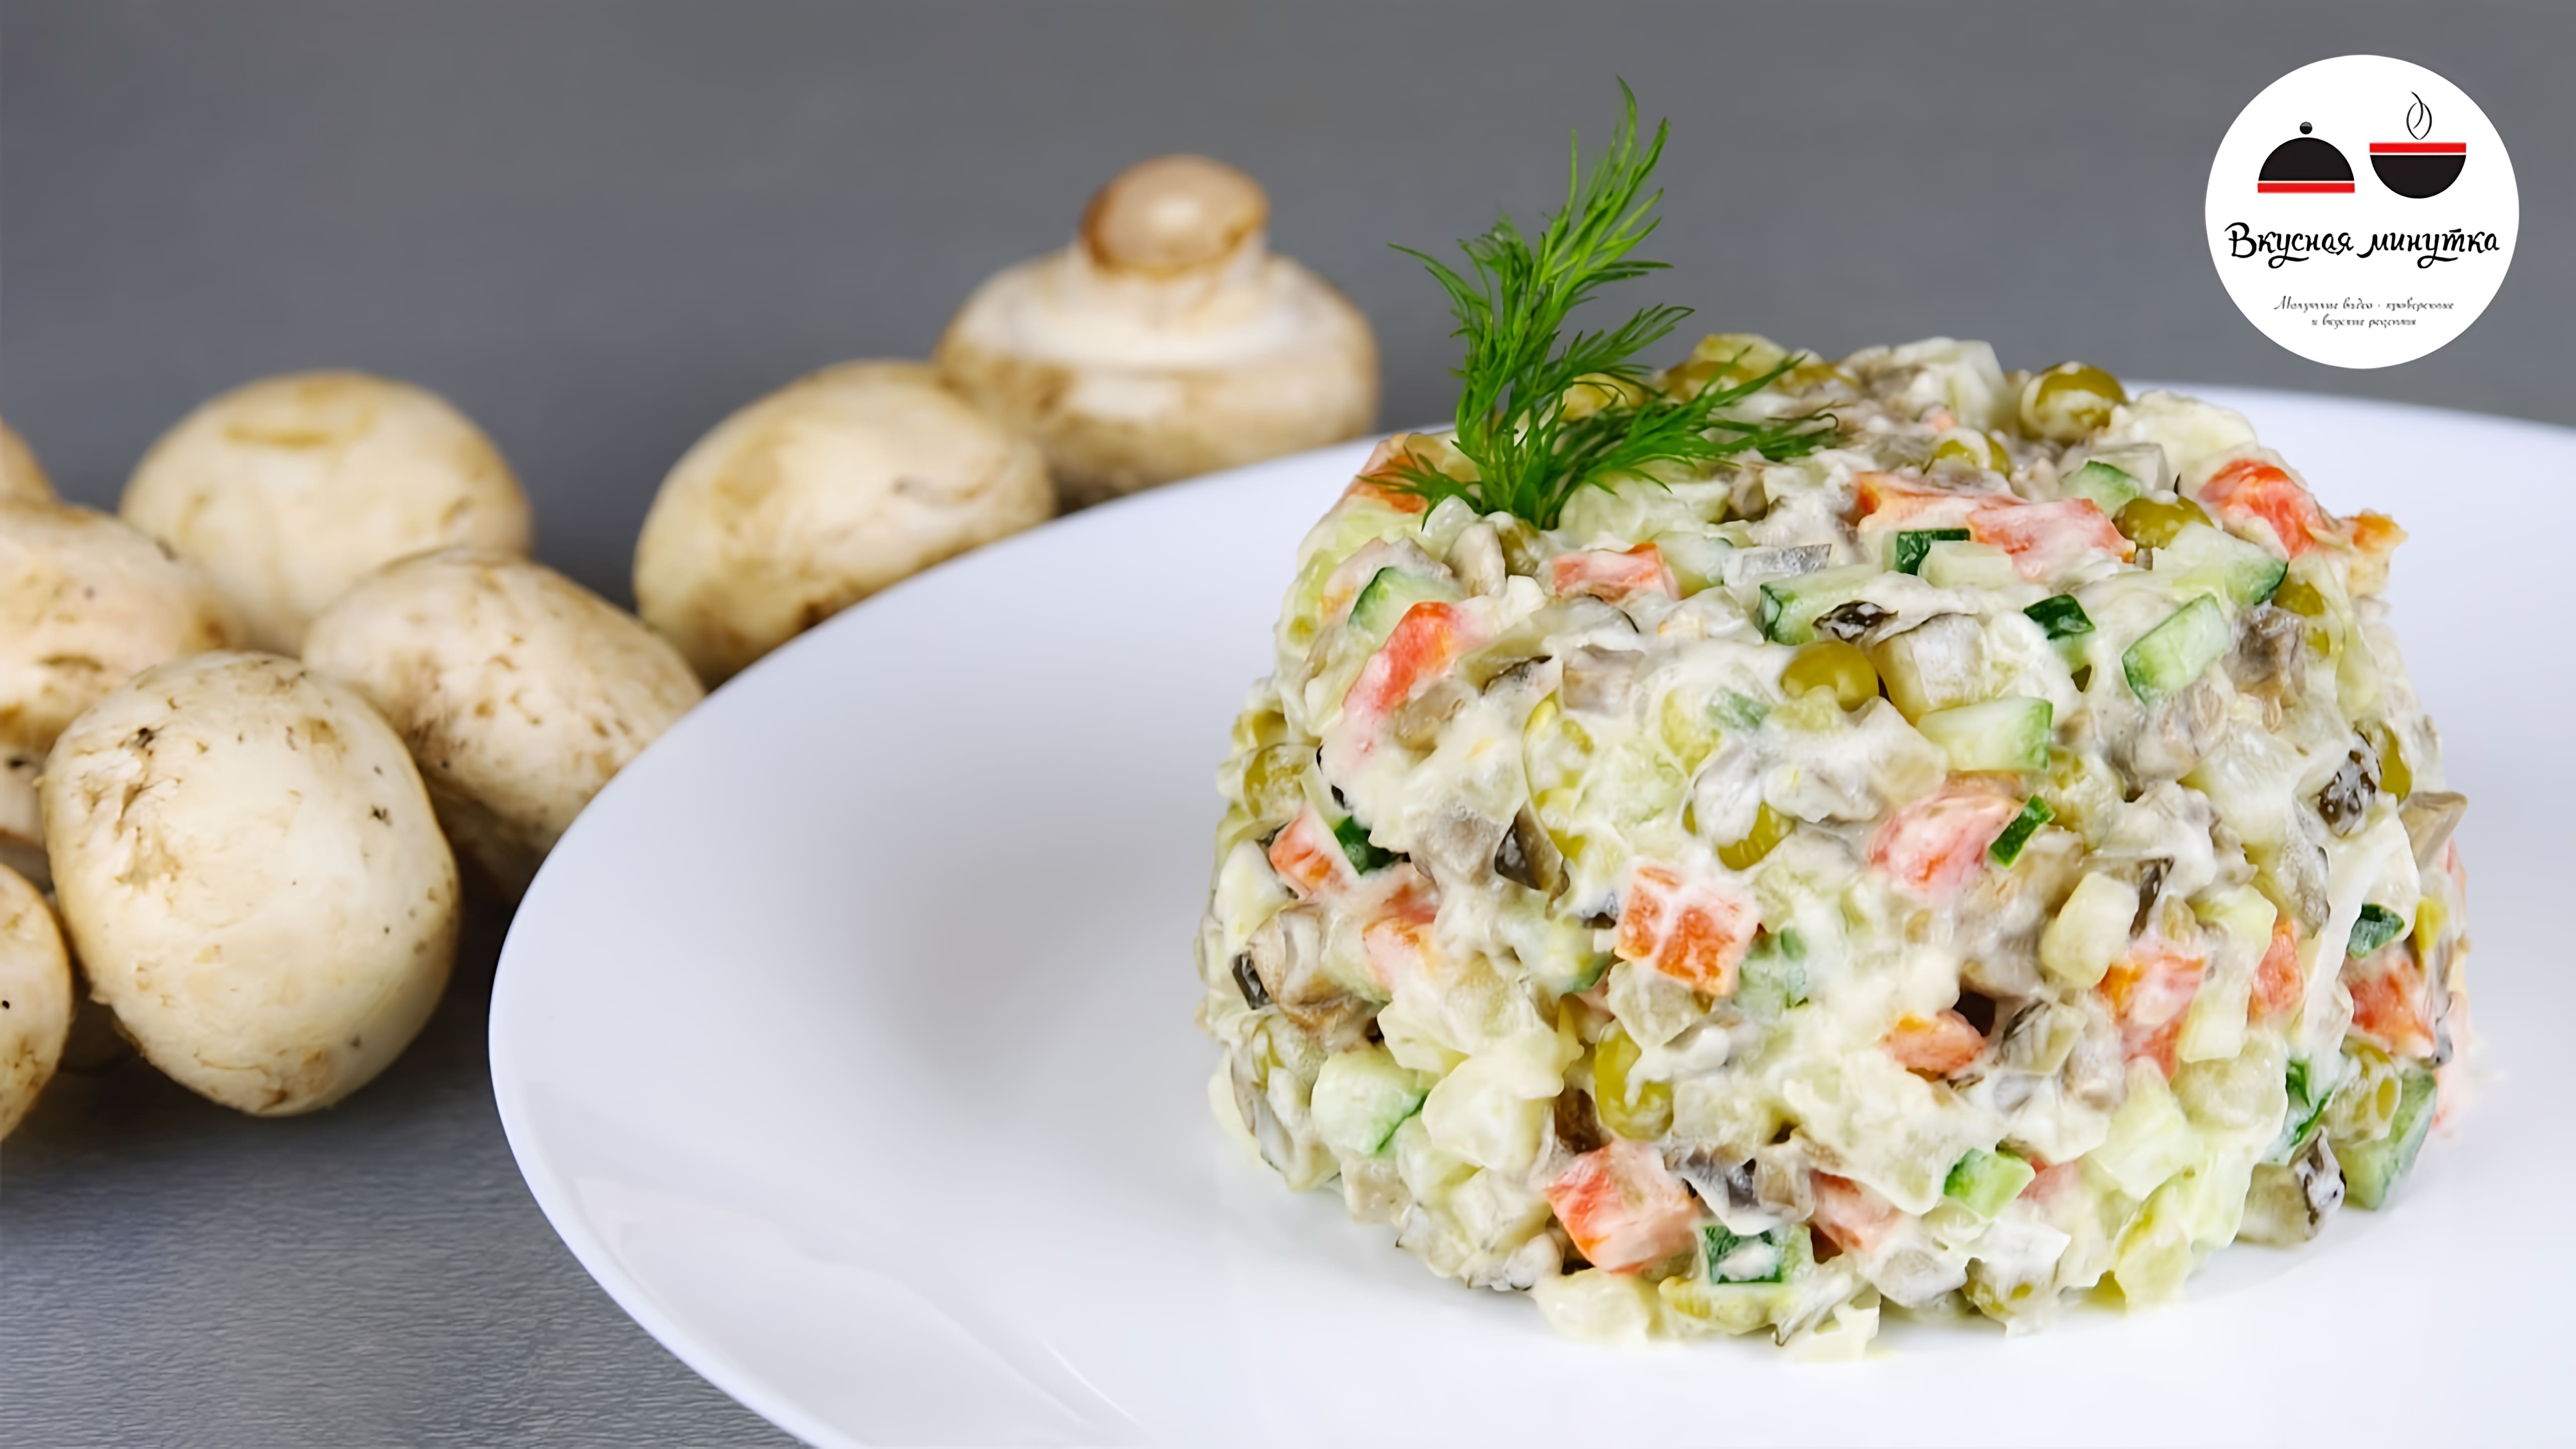 Видео: Постный ОЛИВЬЕ  Рецепт любимого салата  Постное меню  Vegetarian Salad